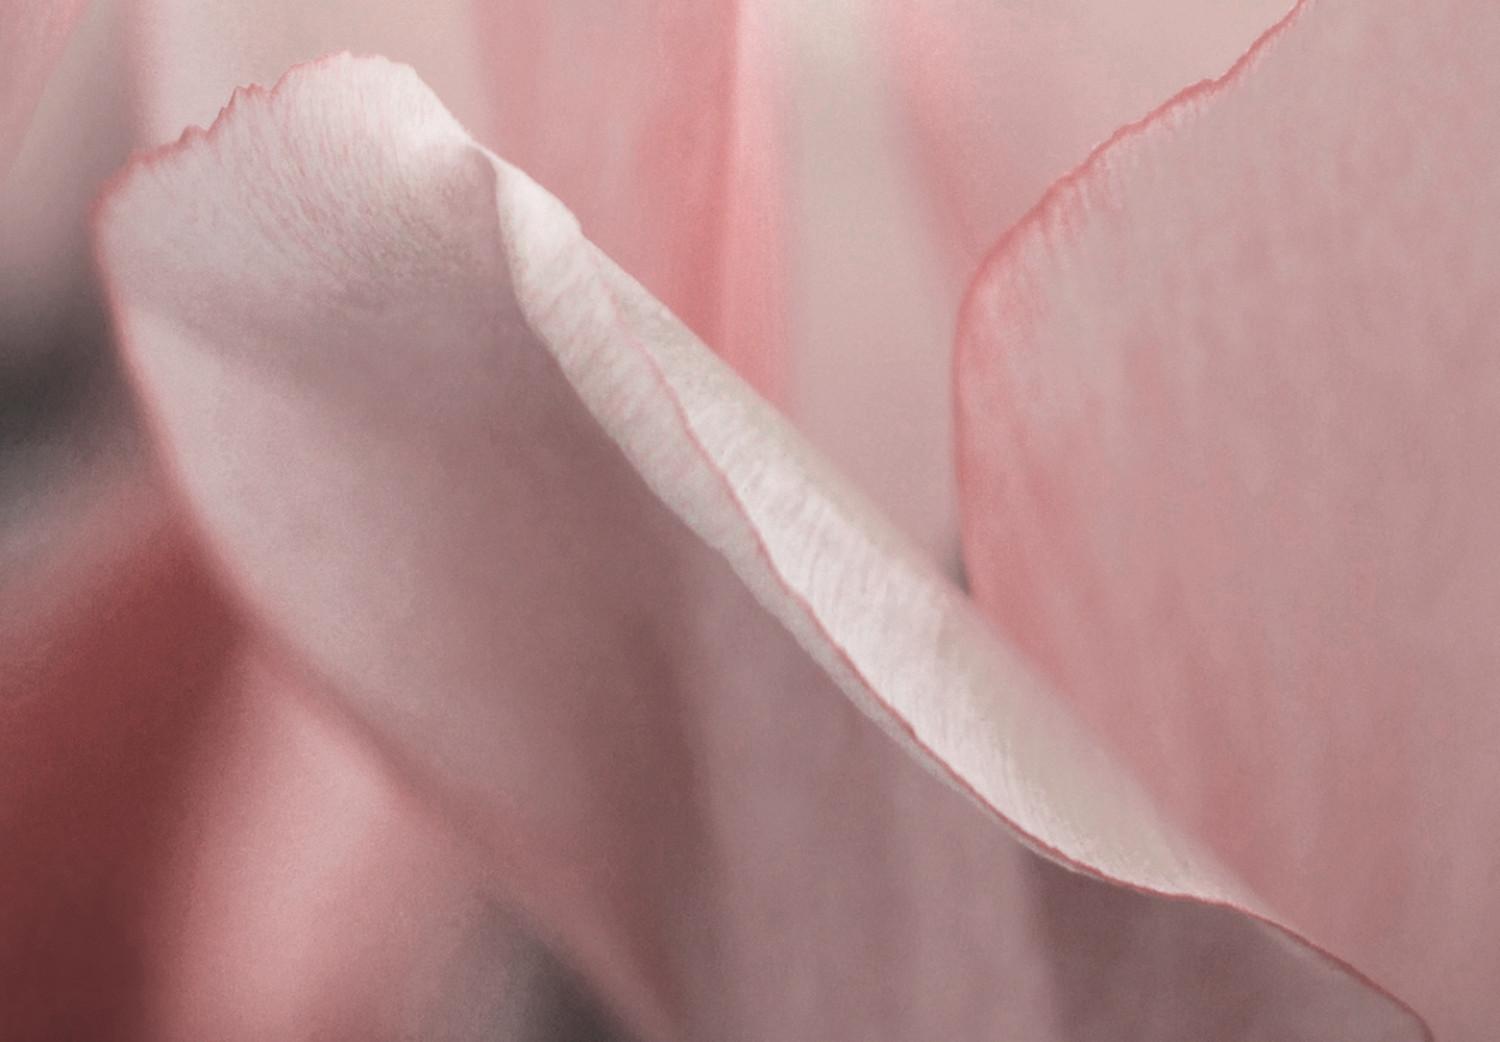 Cuadro decorativo Pétalos de primavera (1 pieza) - tulipán rosa en tonos pastel